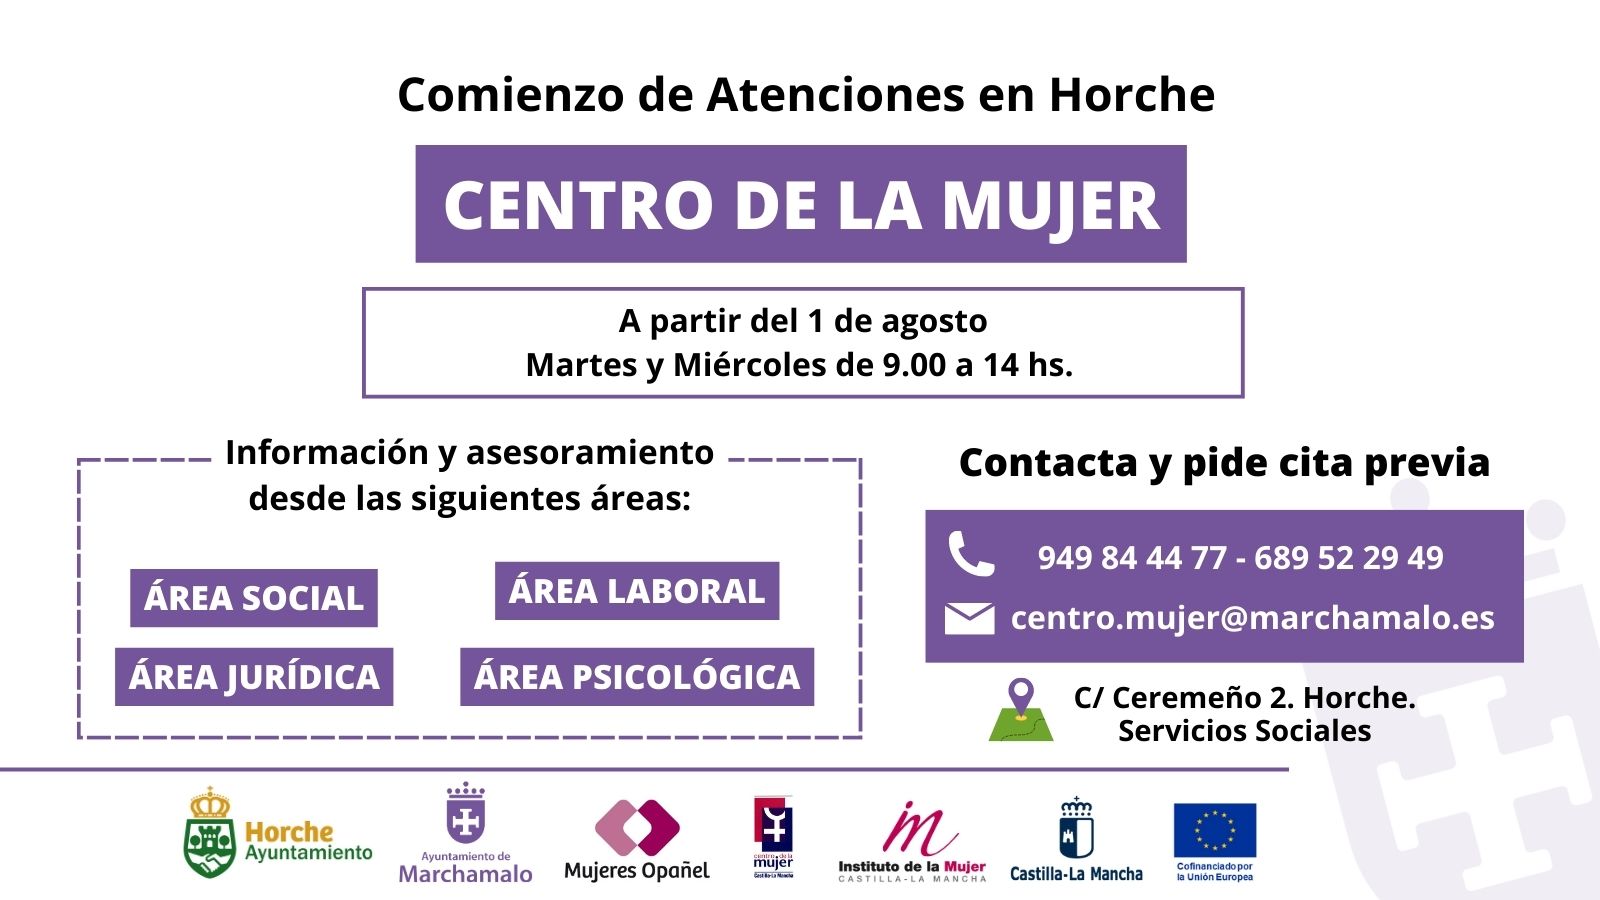 Las mujeres de Horche ya pueden contar con los servicios del Centro de la Mujer en el municipio